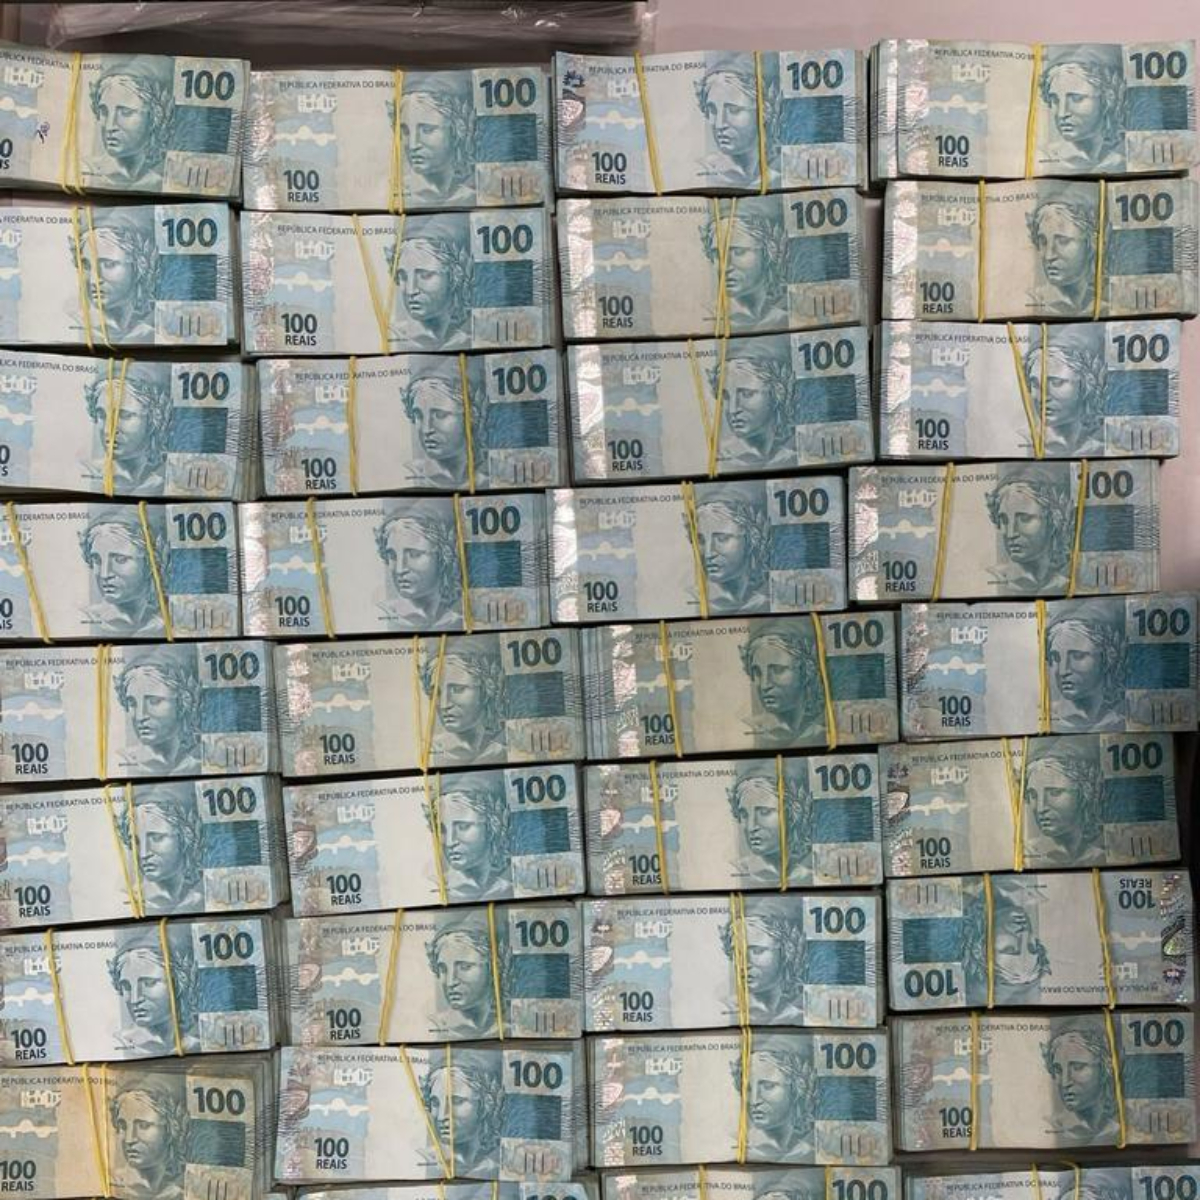  500 mil dinheiro apreendido receita federal na fronteira com o Paraguai 